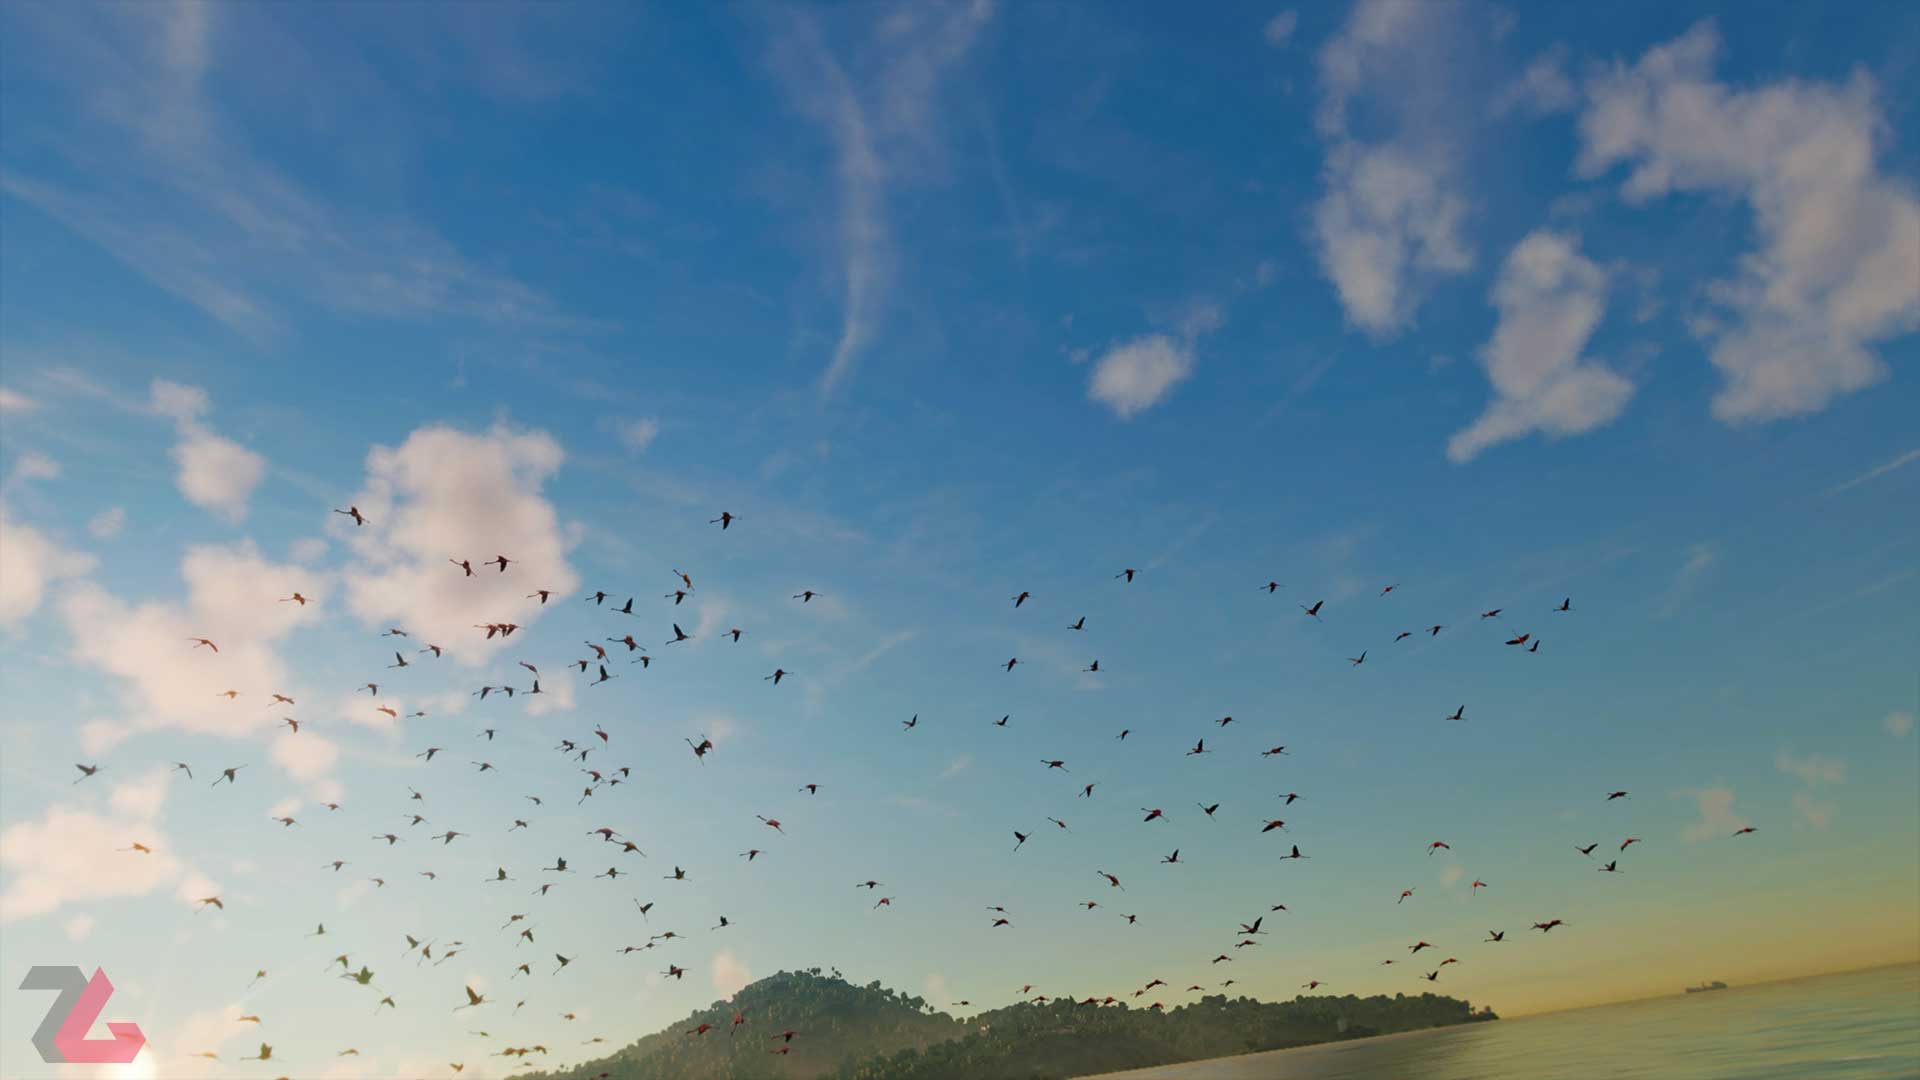 پرواز گروهی پرندگان در آسمان کشور یارا بازی فارکرای یوبیسافت